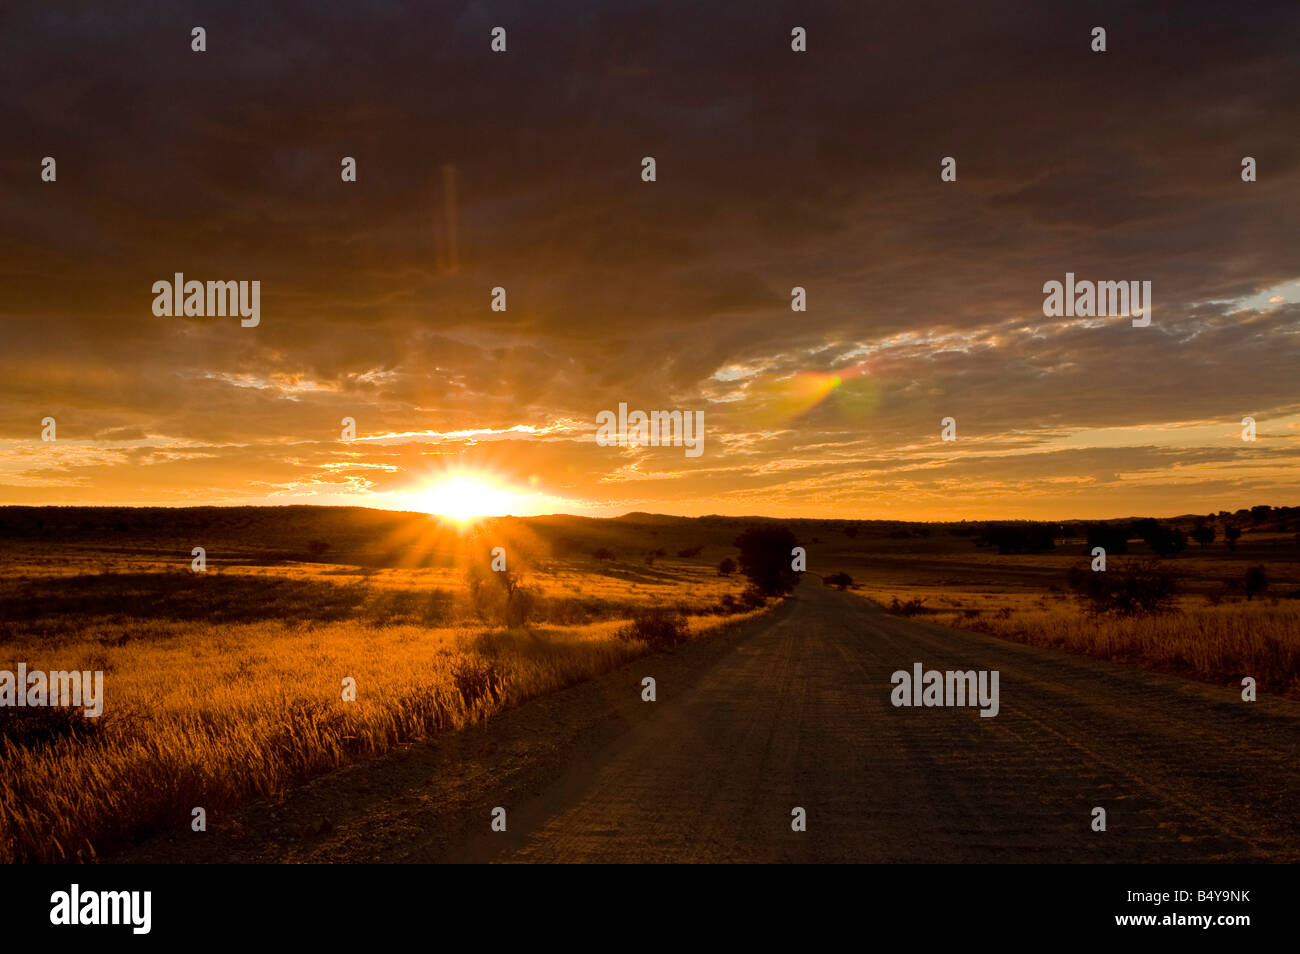 Sunset, Kgalagadi Transfrontier Park, Kalahari, Northern Cape, South Africa Stock Photo